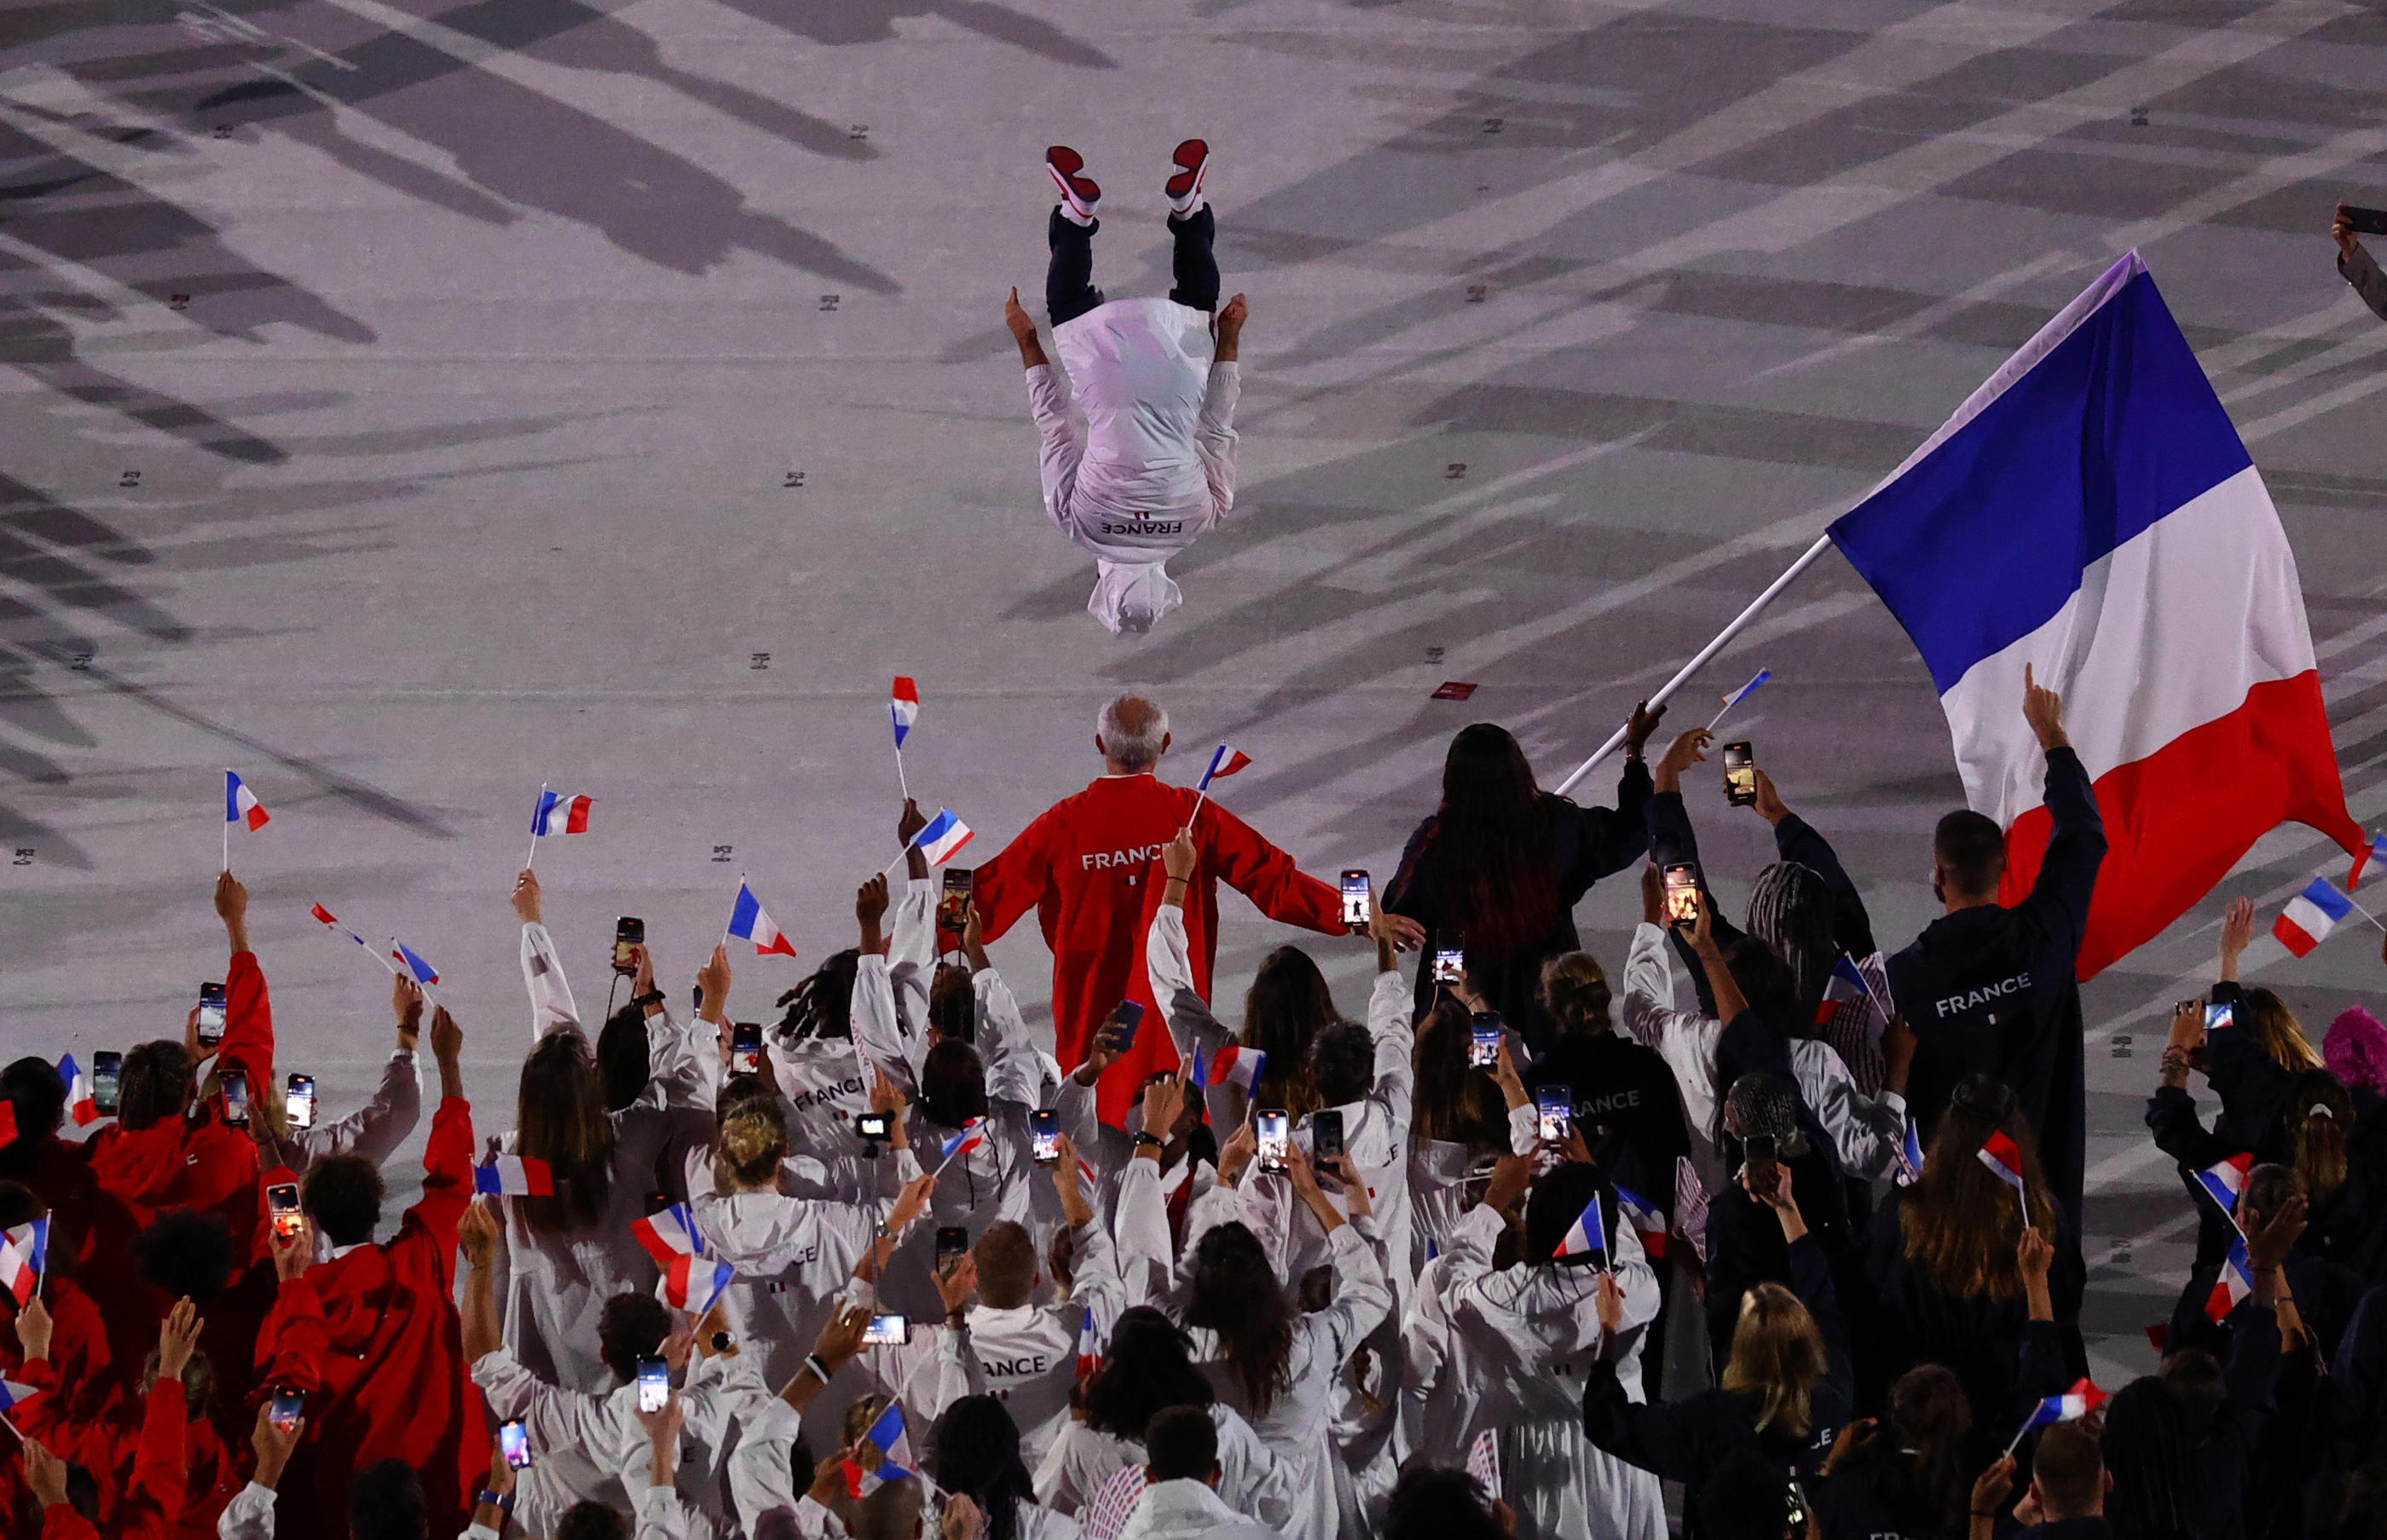 Le gymnaste Aït Saïd a effectué un salto arrière lors de la cérémonie d'ouverture des JO de Tokyo, le 23 juillet dernier. L'un des moments forts de ces Jeux. REUTERS/Leah Millis